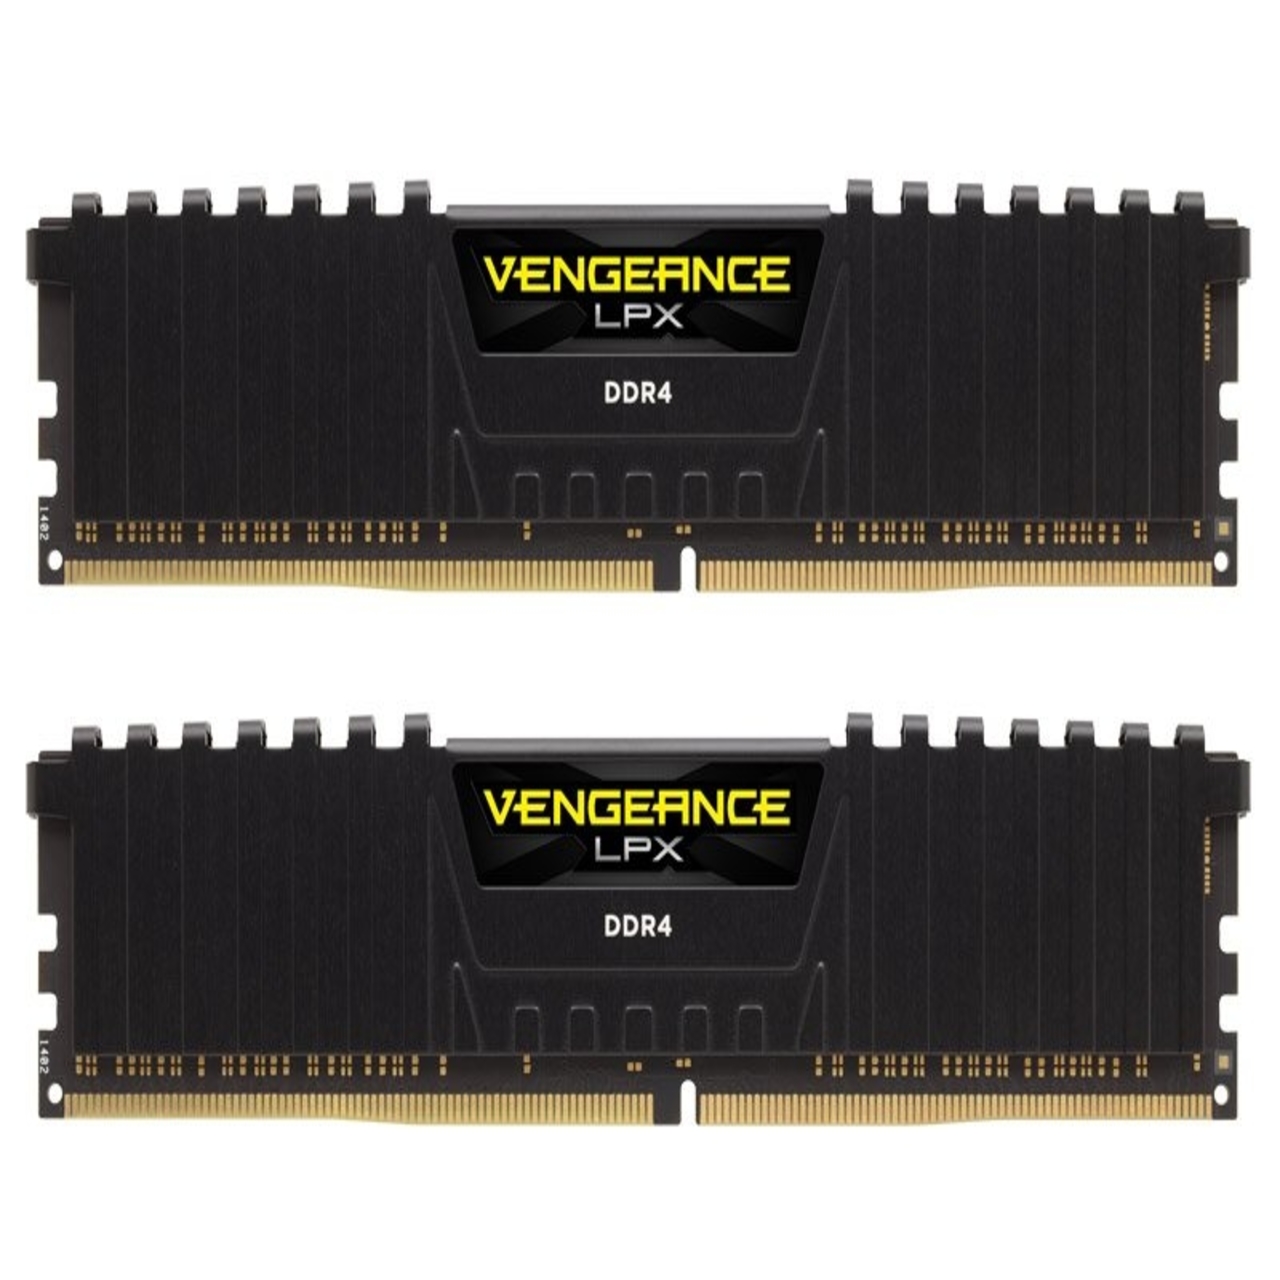 نقد و بررسی رم دسکتاپ DDR4 تک کاناله 2400 مگاهرتز CL16 کورسیر مدل Vengeance Lpx ظرفیت 16 گیگابایت توسط خریداران